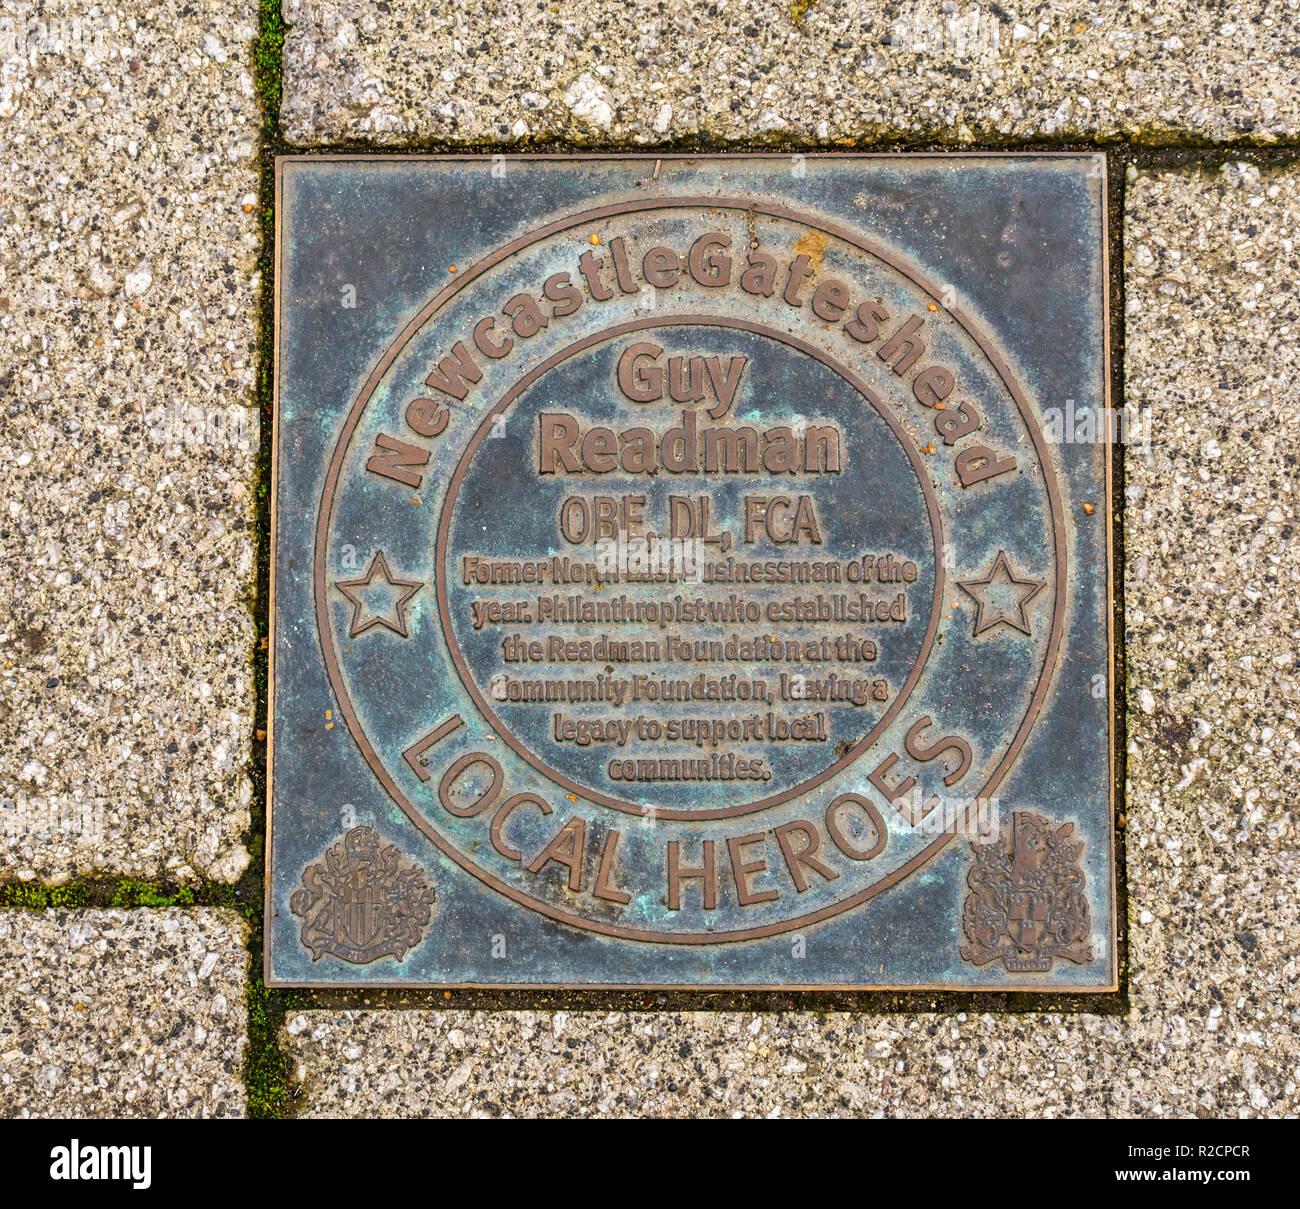 Bronze Plakette ehren Newcastle und Gateshead inspirierende Menschen der letzten 60 Jahre, Guy Readman, Kai. Newcastle Upon Tyne, England, Großbritannien Stockfoto